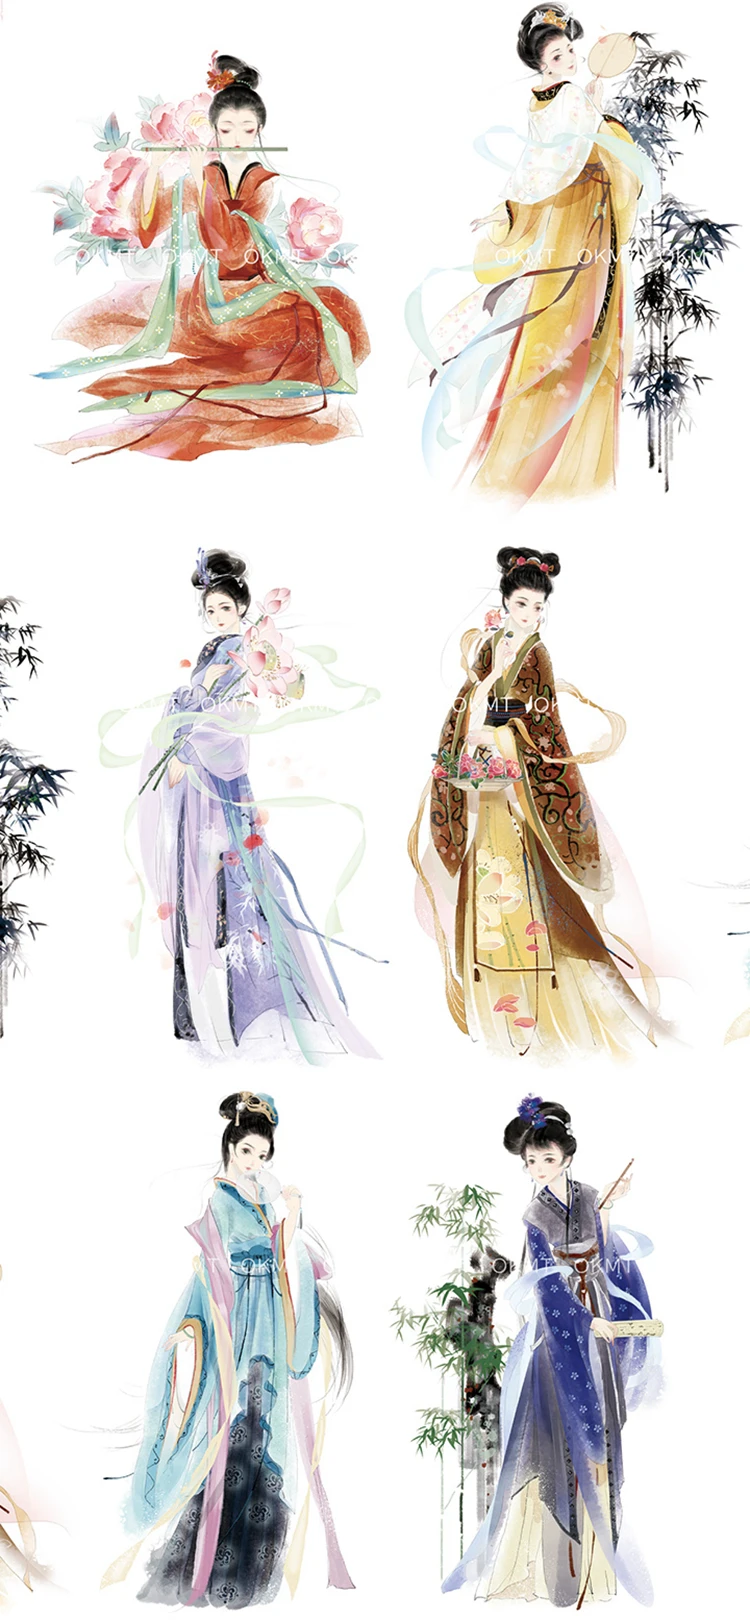 Васи лента Китайская классическая красота девушки Японский декоративный клей DIY маскирующая бумага лента Этикетка наклейки дневник